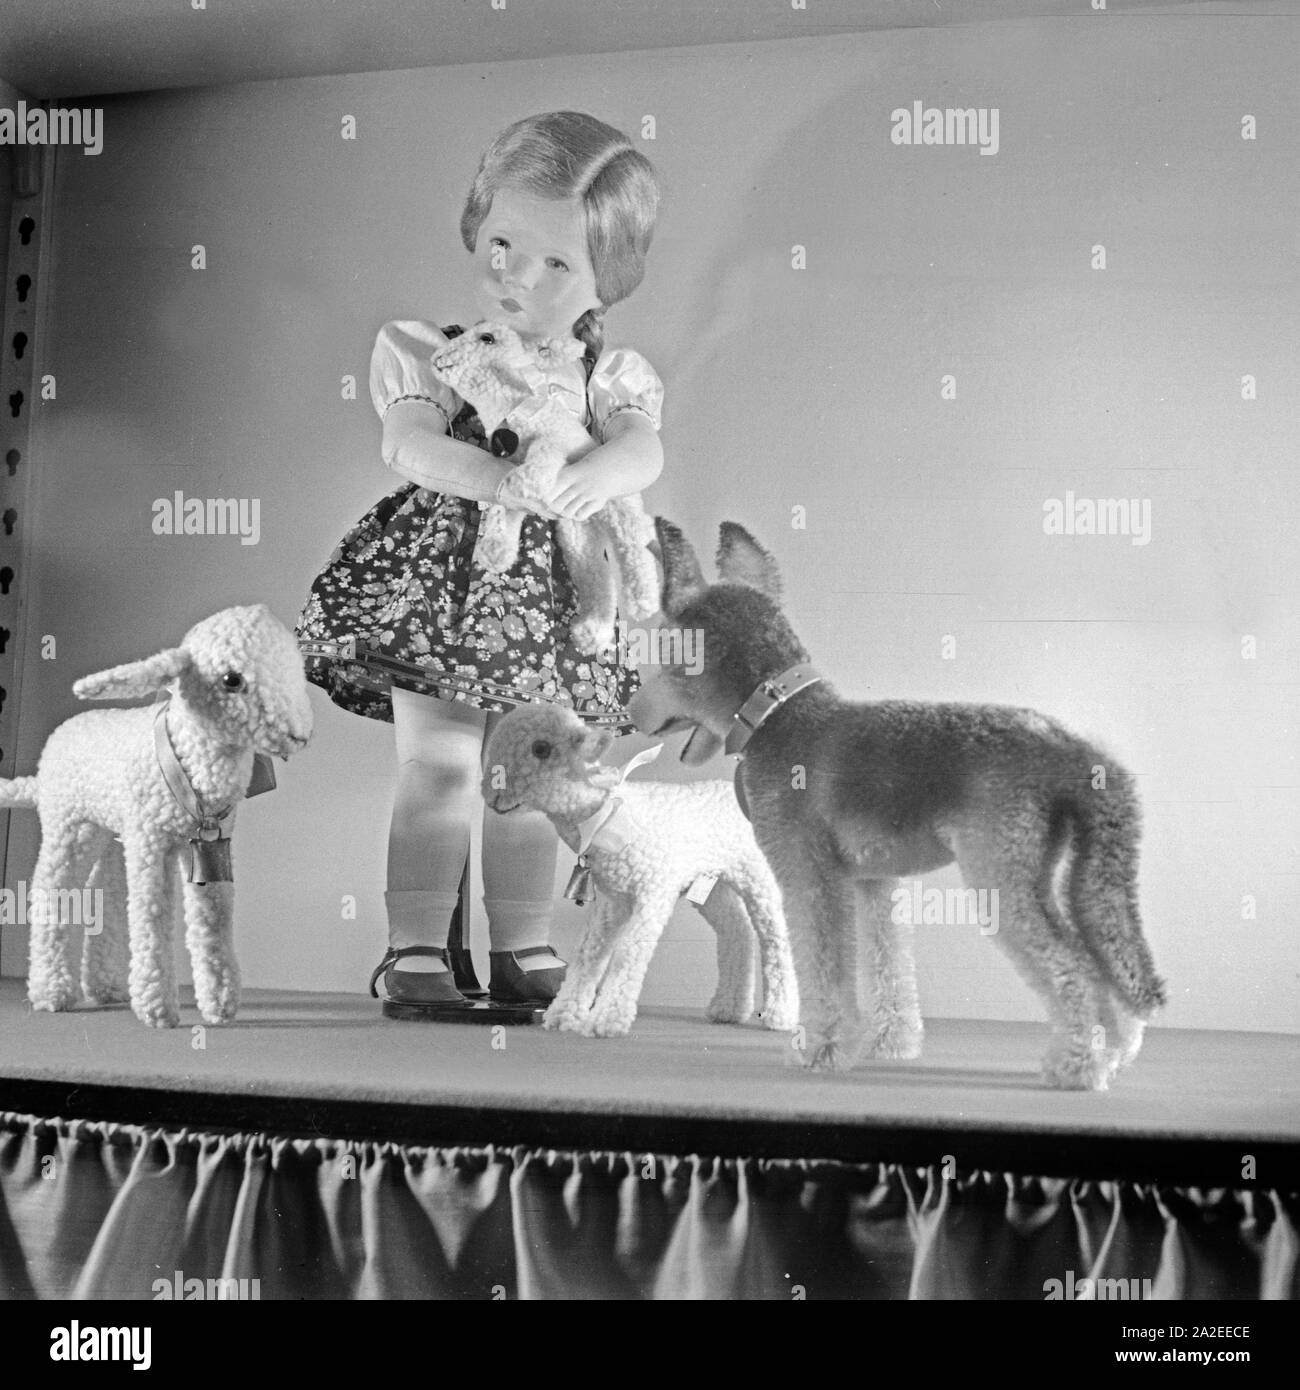 Einige Modelle, hier die Schäferin, der berühmten Kate Kruse Puppen aus Bad Kösen, Deutschland 1930er Jahre. Alcuni campioni del famoso Kaethe Kruse bambole di Bad Koesen, Germania 1930s. Foto Stock